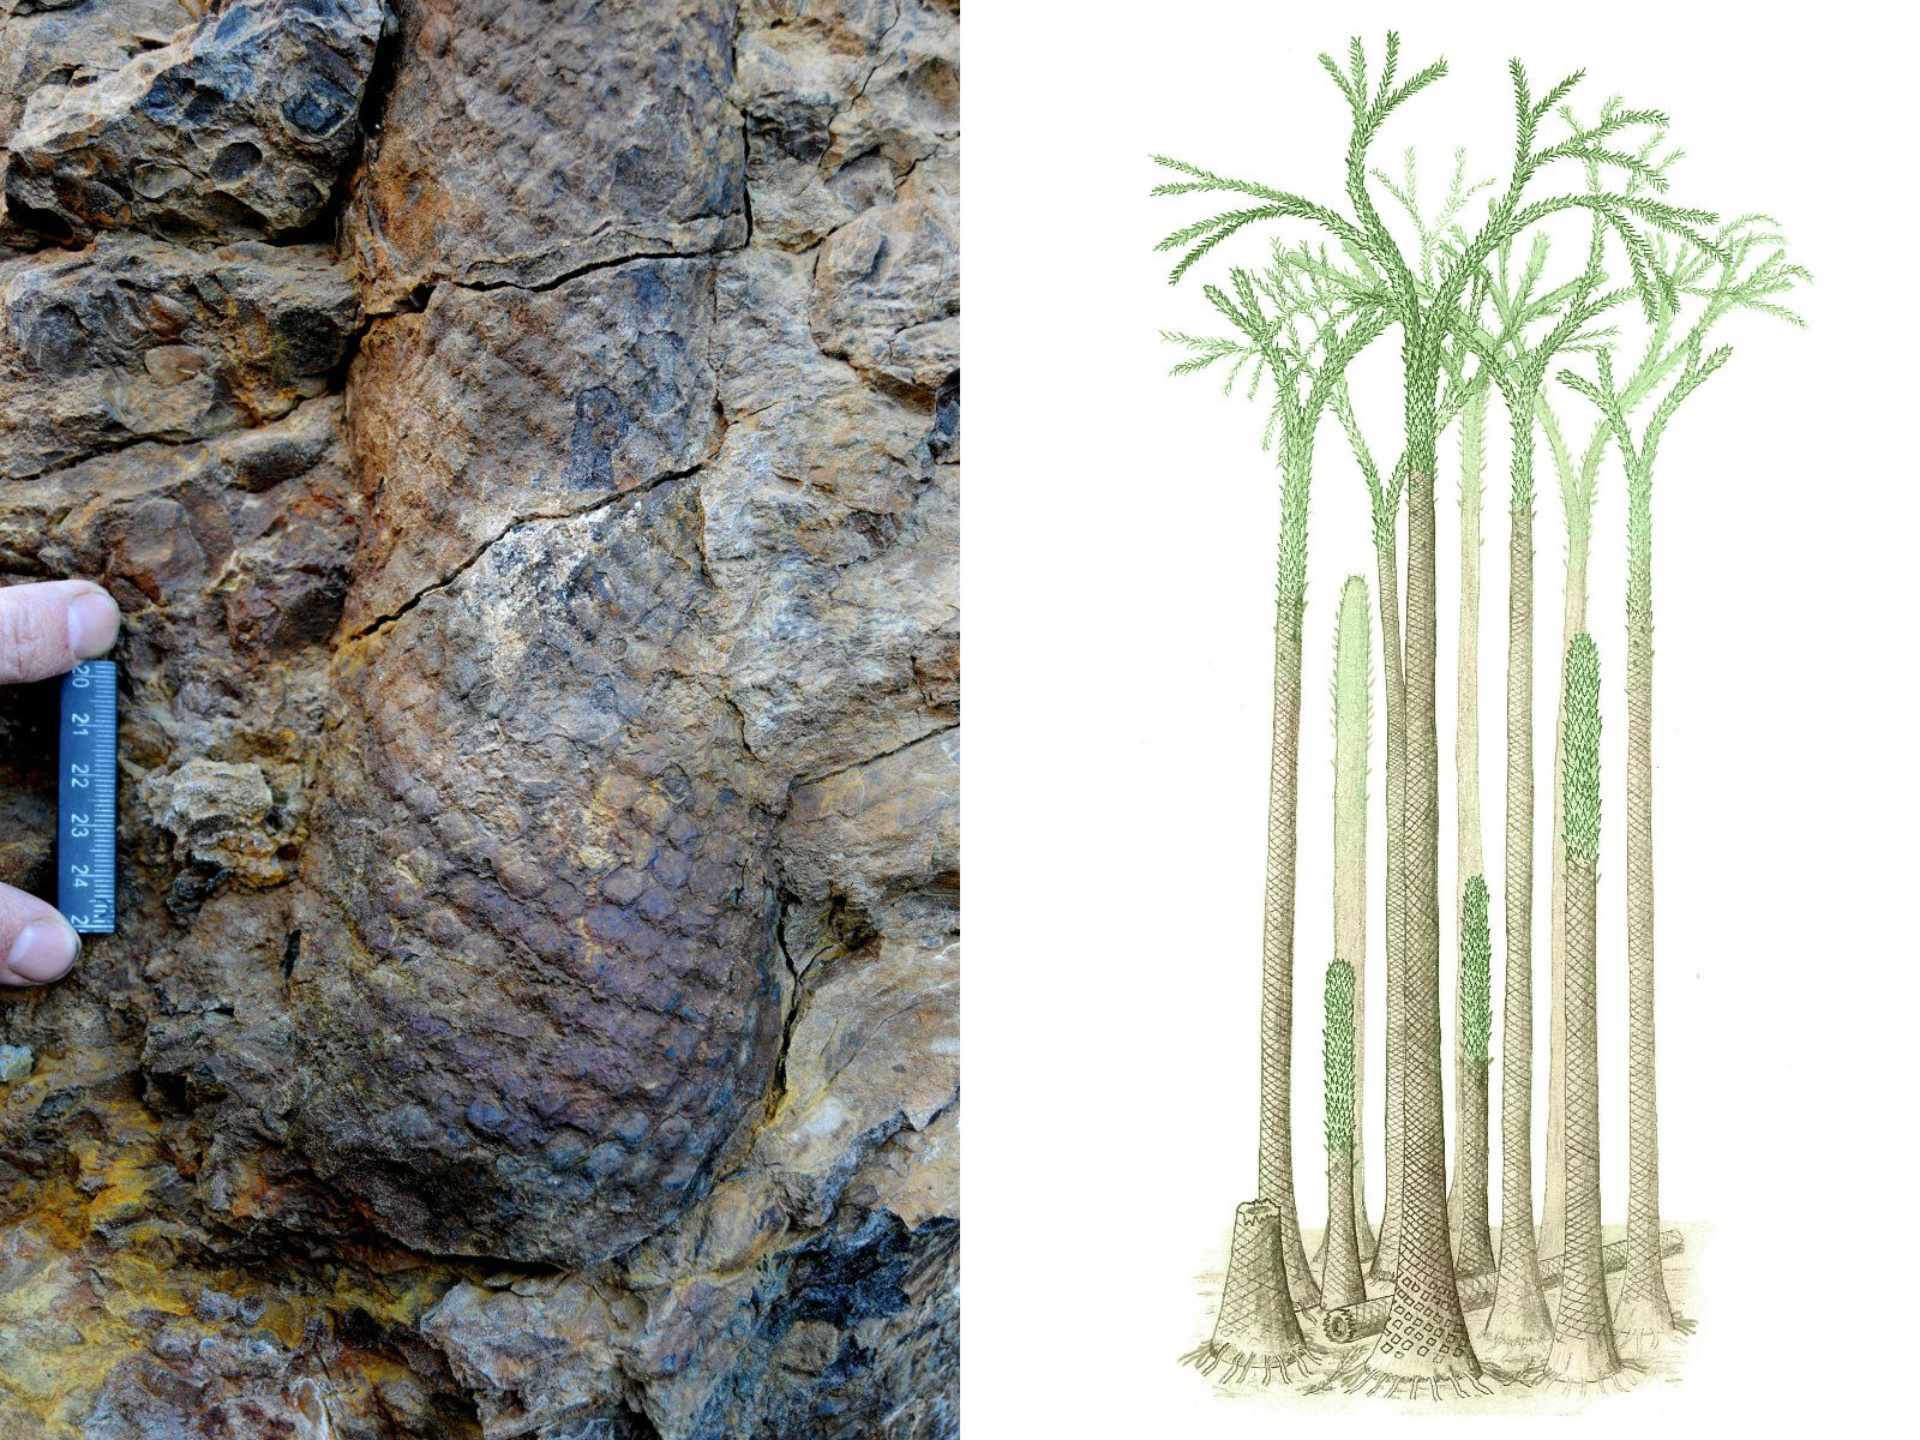 Teilweiser Baumstamm mit erhaltener Basis am Standort in Spitzbergen (links) und eine Rekonstruktion des Aussehens des alten Waldes vor 380 Millionen Jahren (rechts)